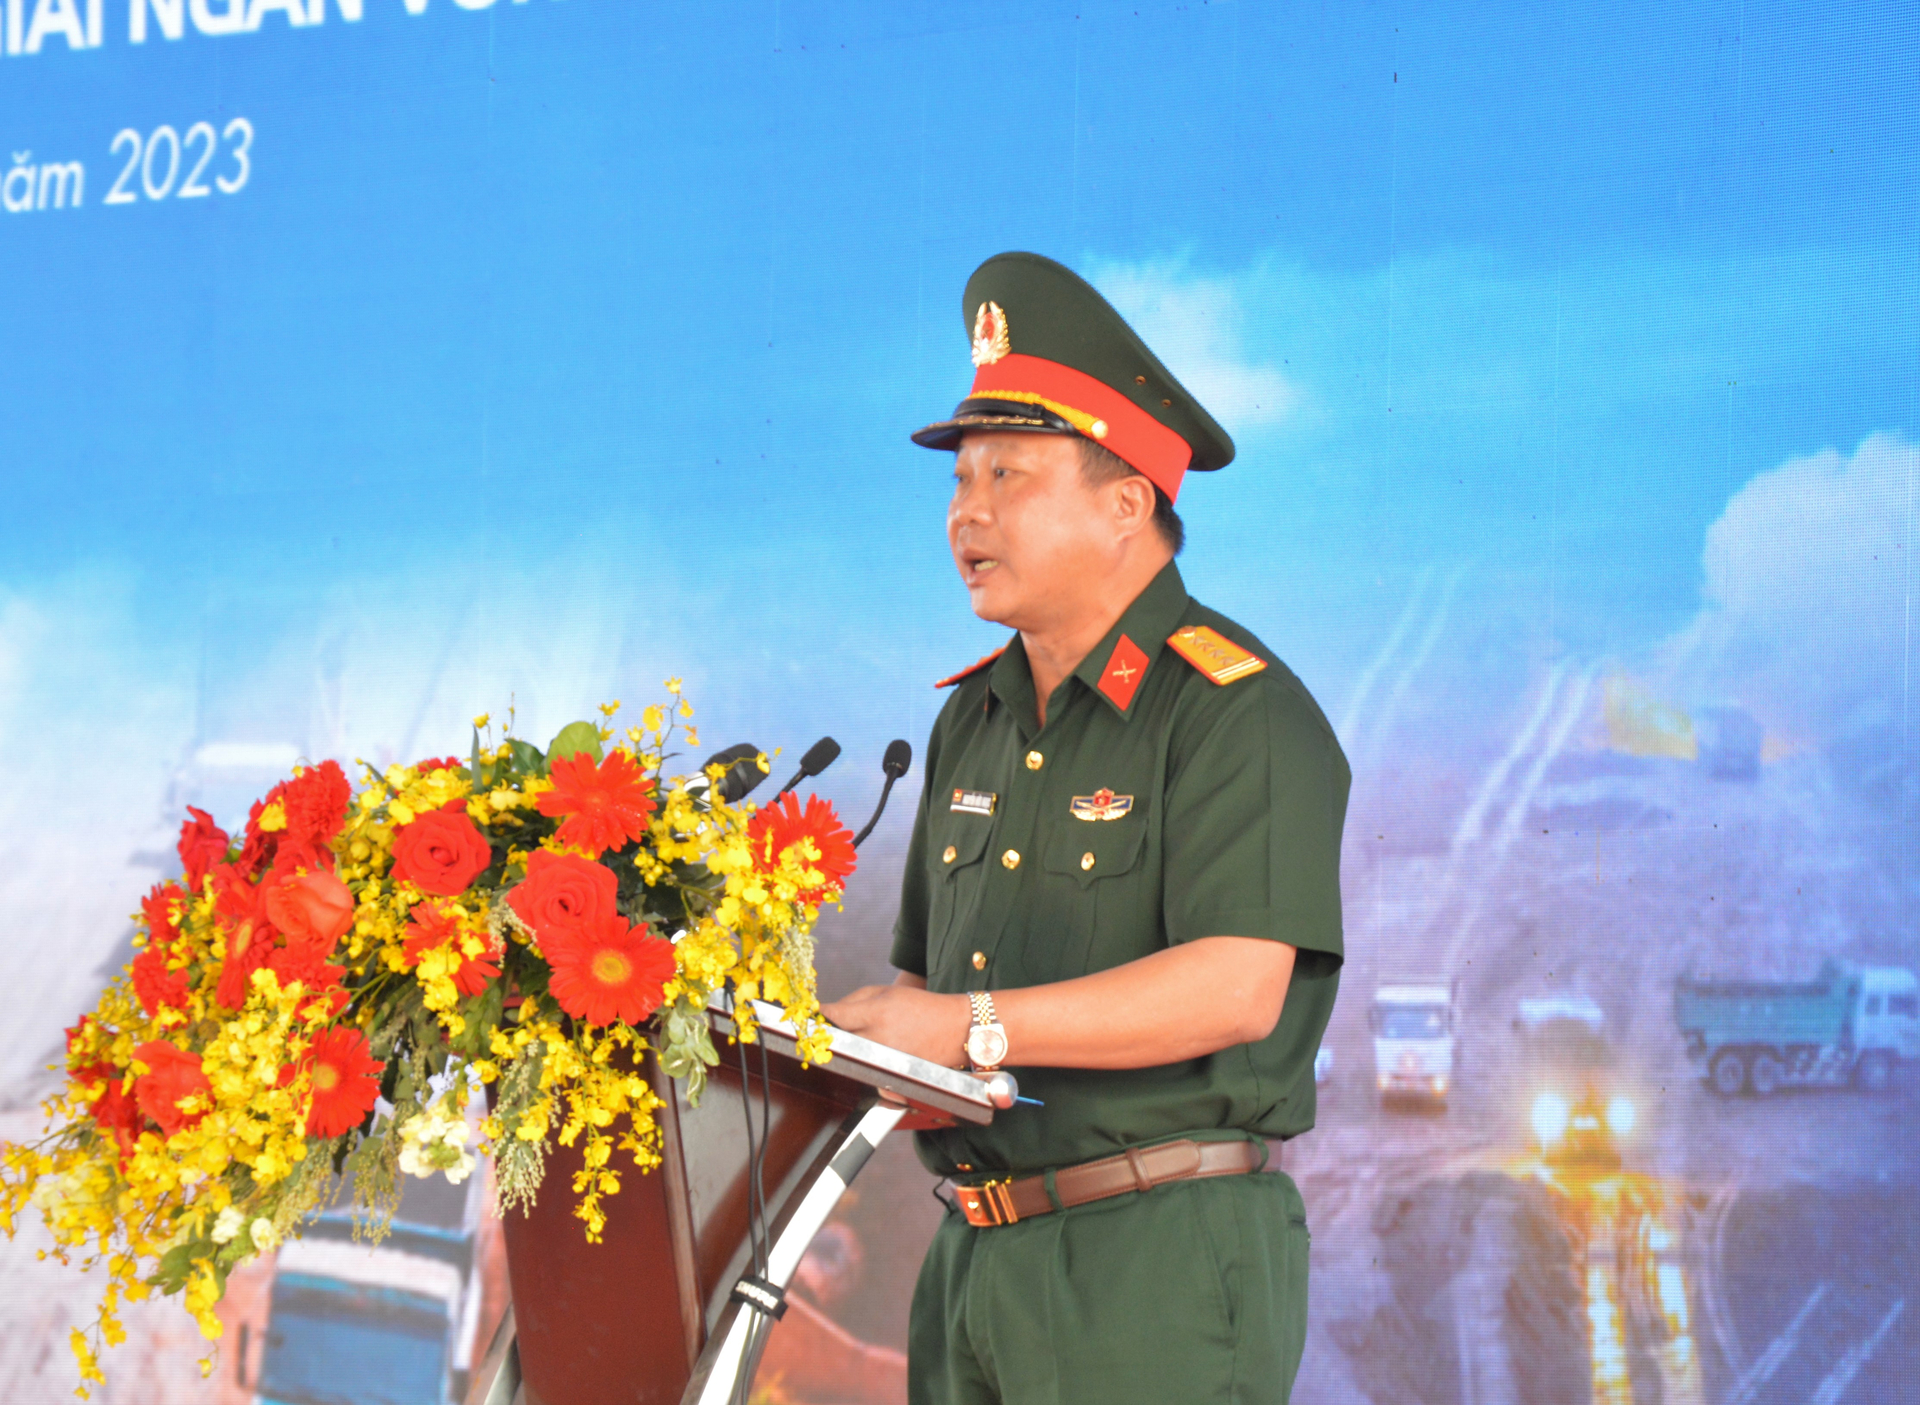 Đại tá Nguyễn Hữu Ngọc, Tư lệnh Binh đoàn 12, Tổng Giám đốc công ty xây dựng Trường Sơn khẳng định 'vượt nắng, thắng mưa' hoàn thành dự án đúng tiến độ.